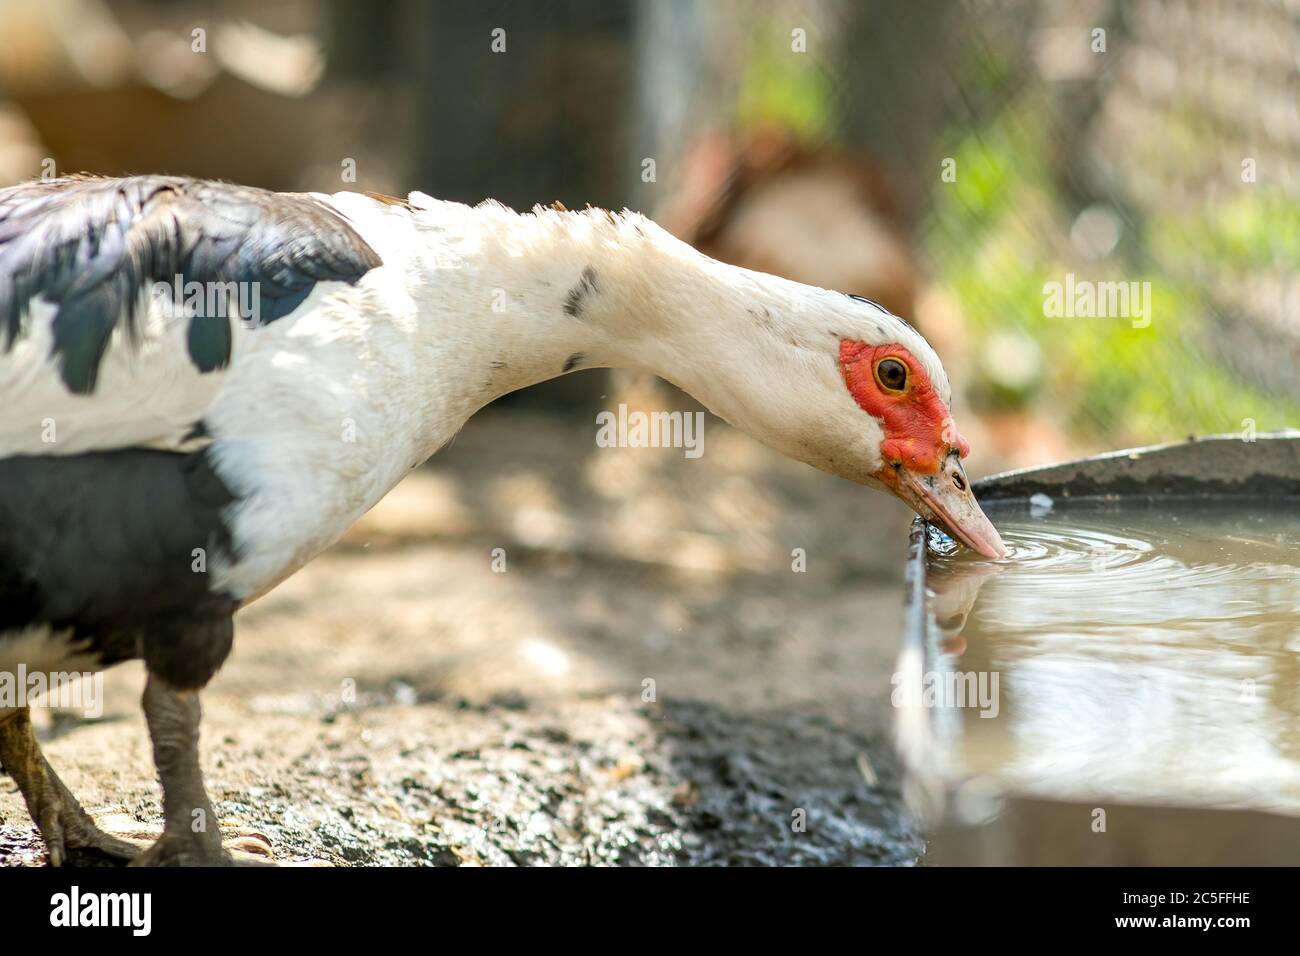 Alimentazione di anatra su cortile rurale tradizionale. Dettaglio di un uccello acquerello che beve acqua sul cortile fienile. Concetto di allevamento avicolo a gamma libera. Foto Stock